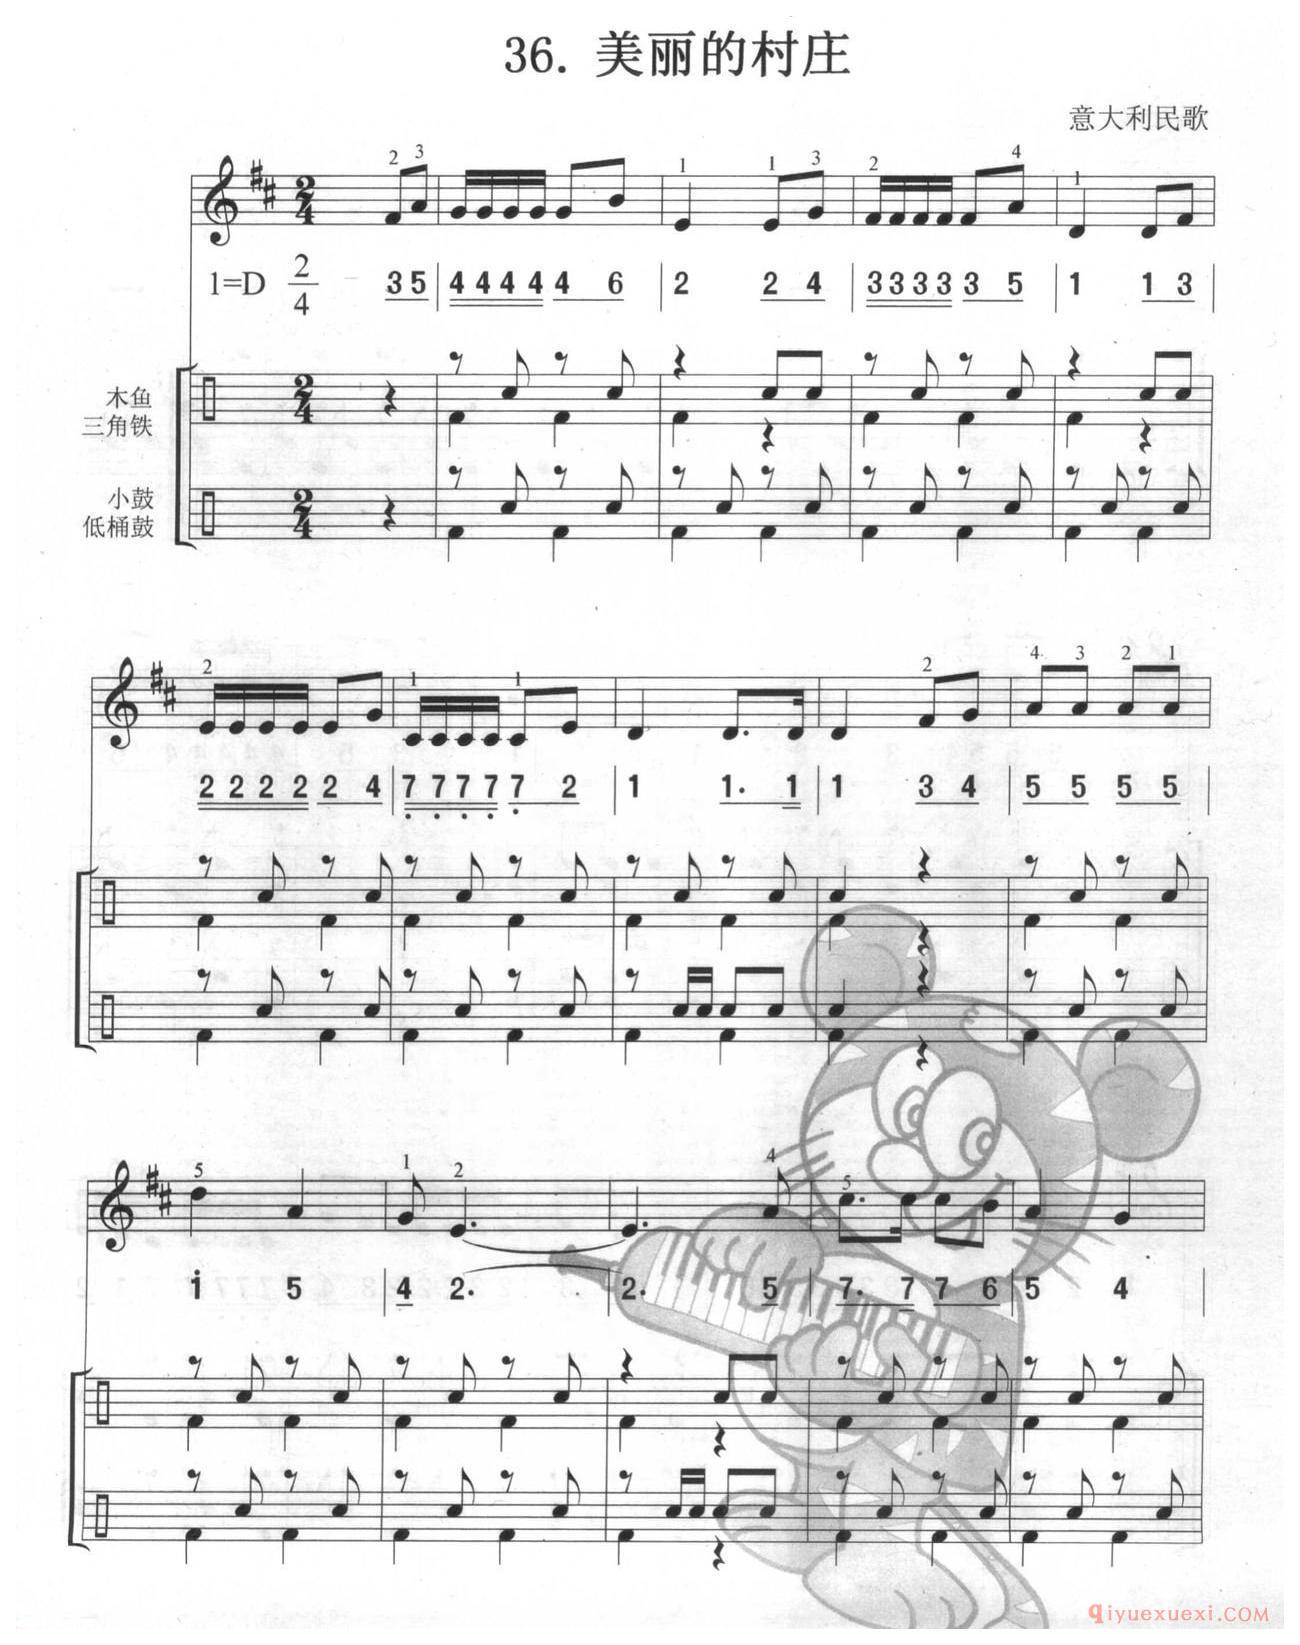 口风琴多声部乐曲《啄木鸟(总谱)》加入打击乐的练习